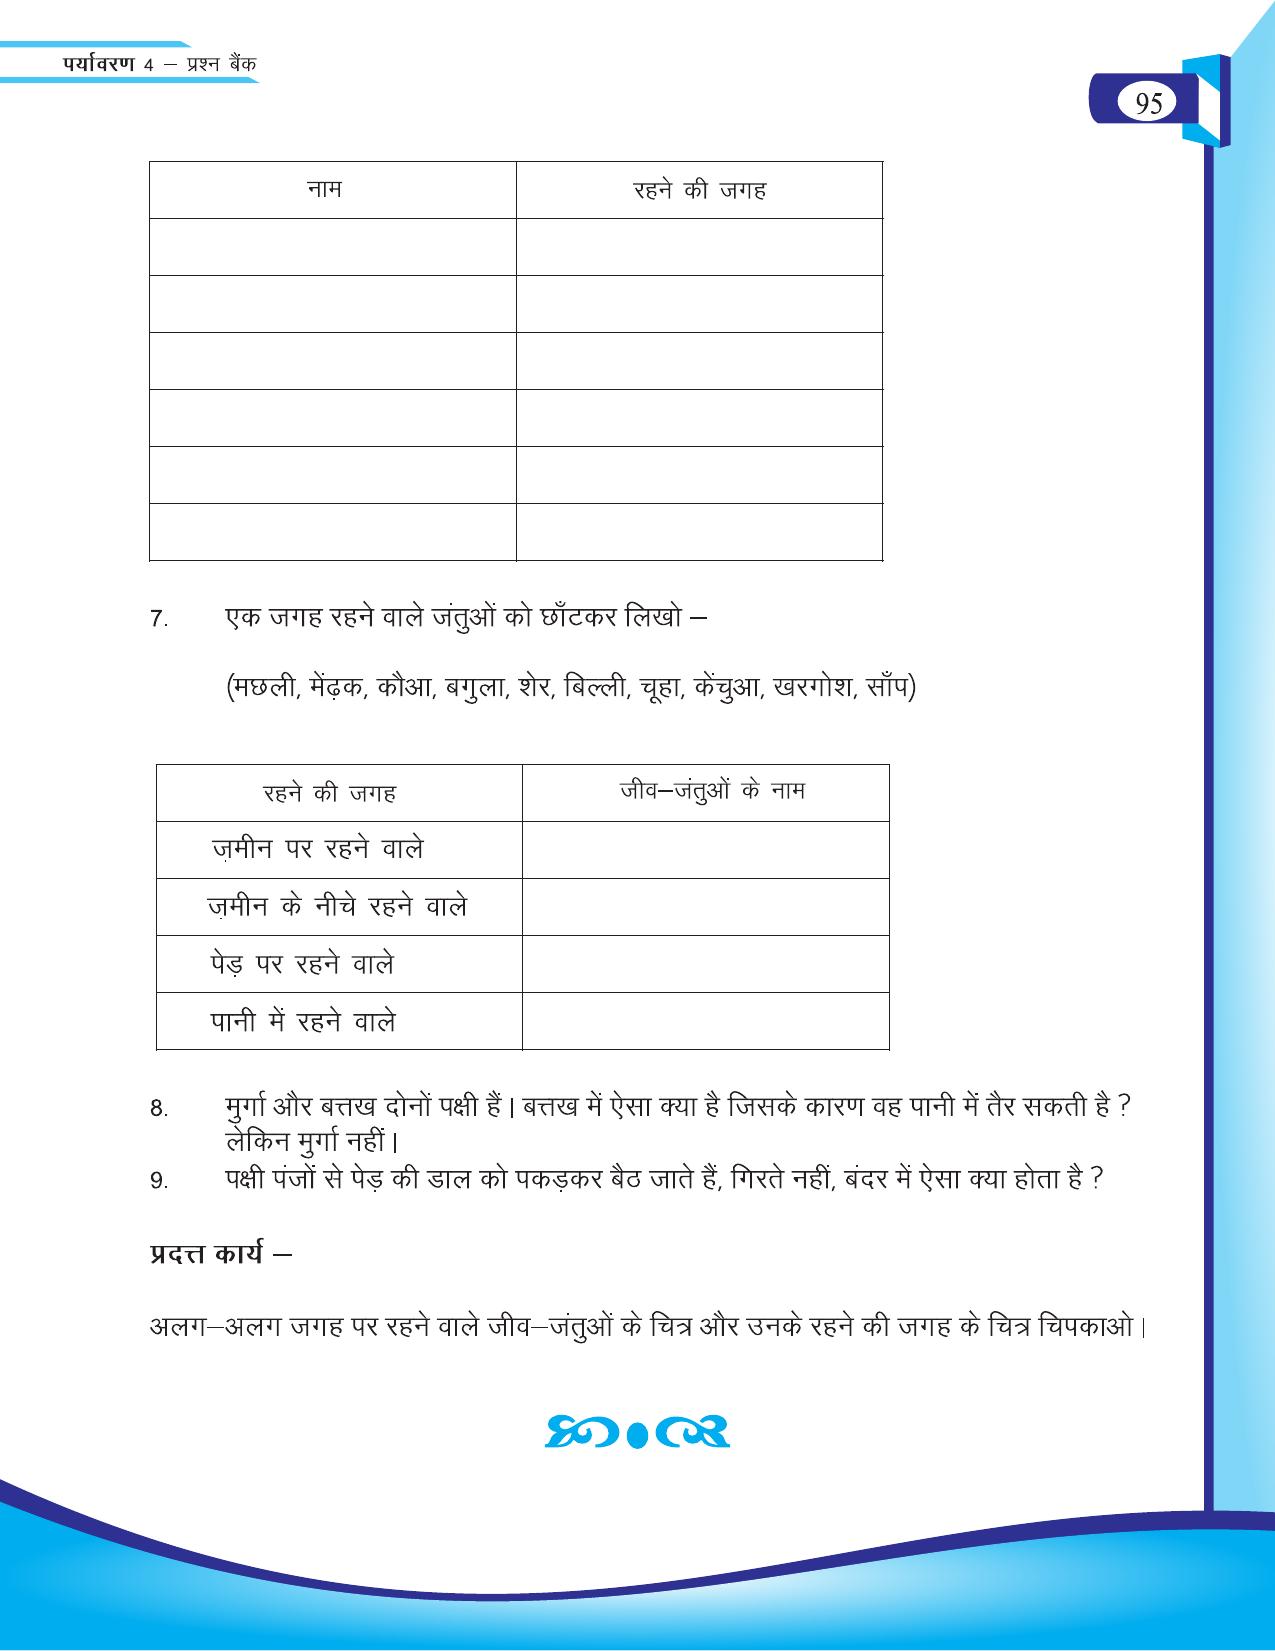 Chhattisgarh Board Class 4 EVS Question Bank 2015-16 - Page 24